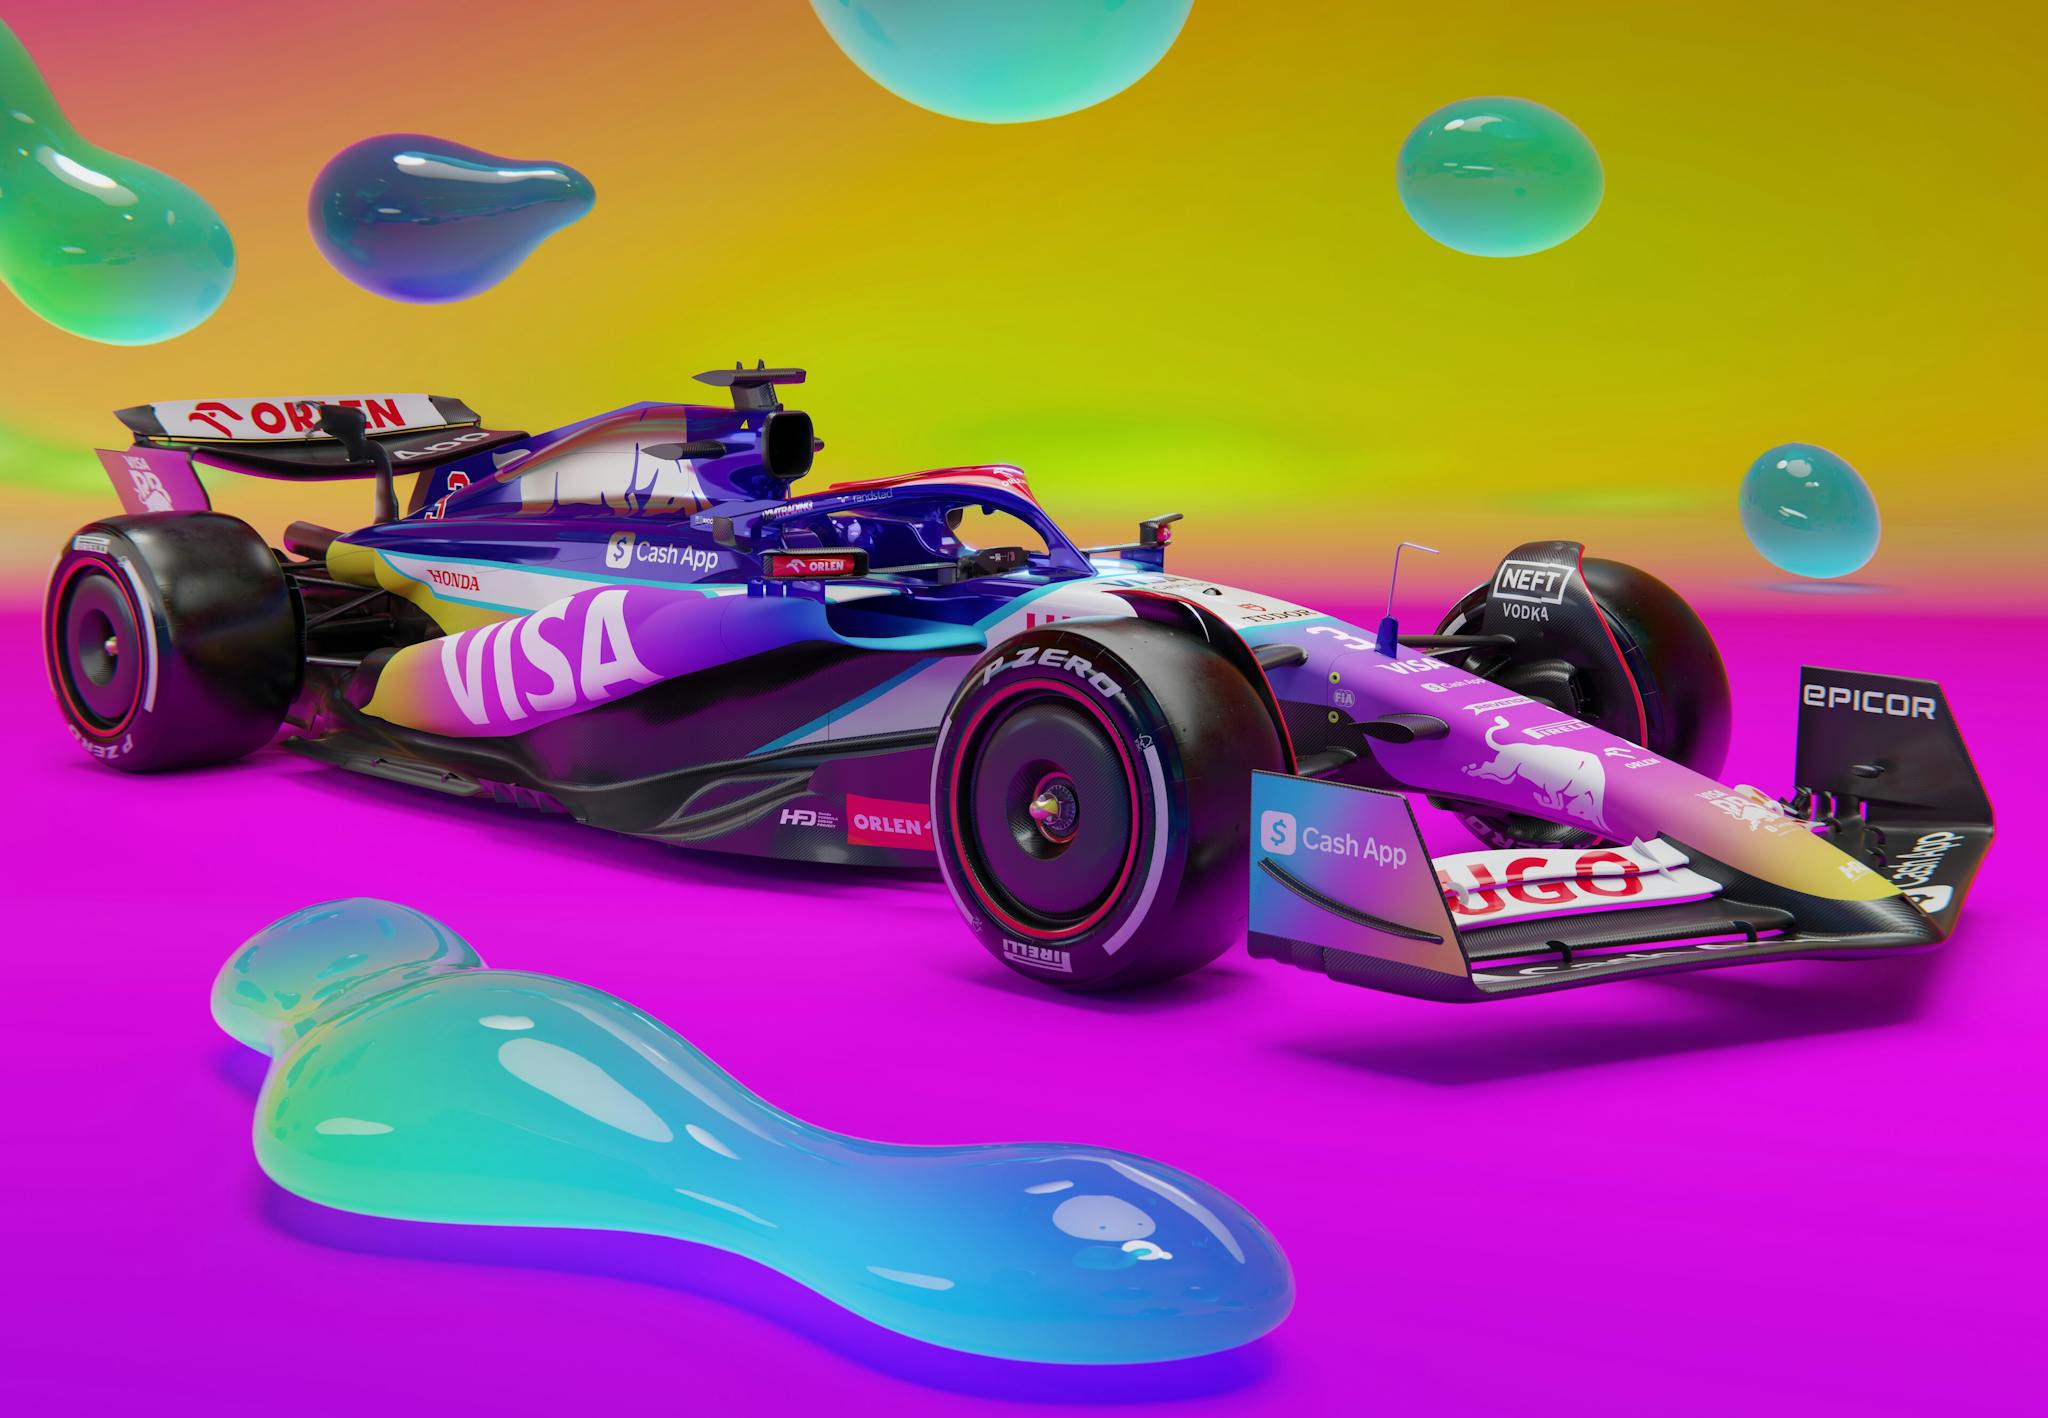 Kolorowy bolid F1. Zespół RB z wyjątkowym malowaniem na GP Miami